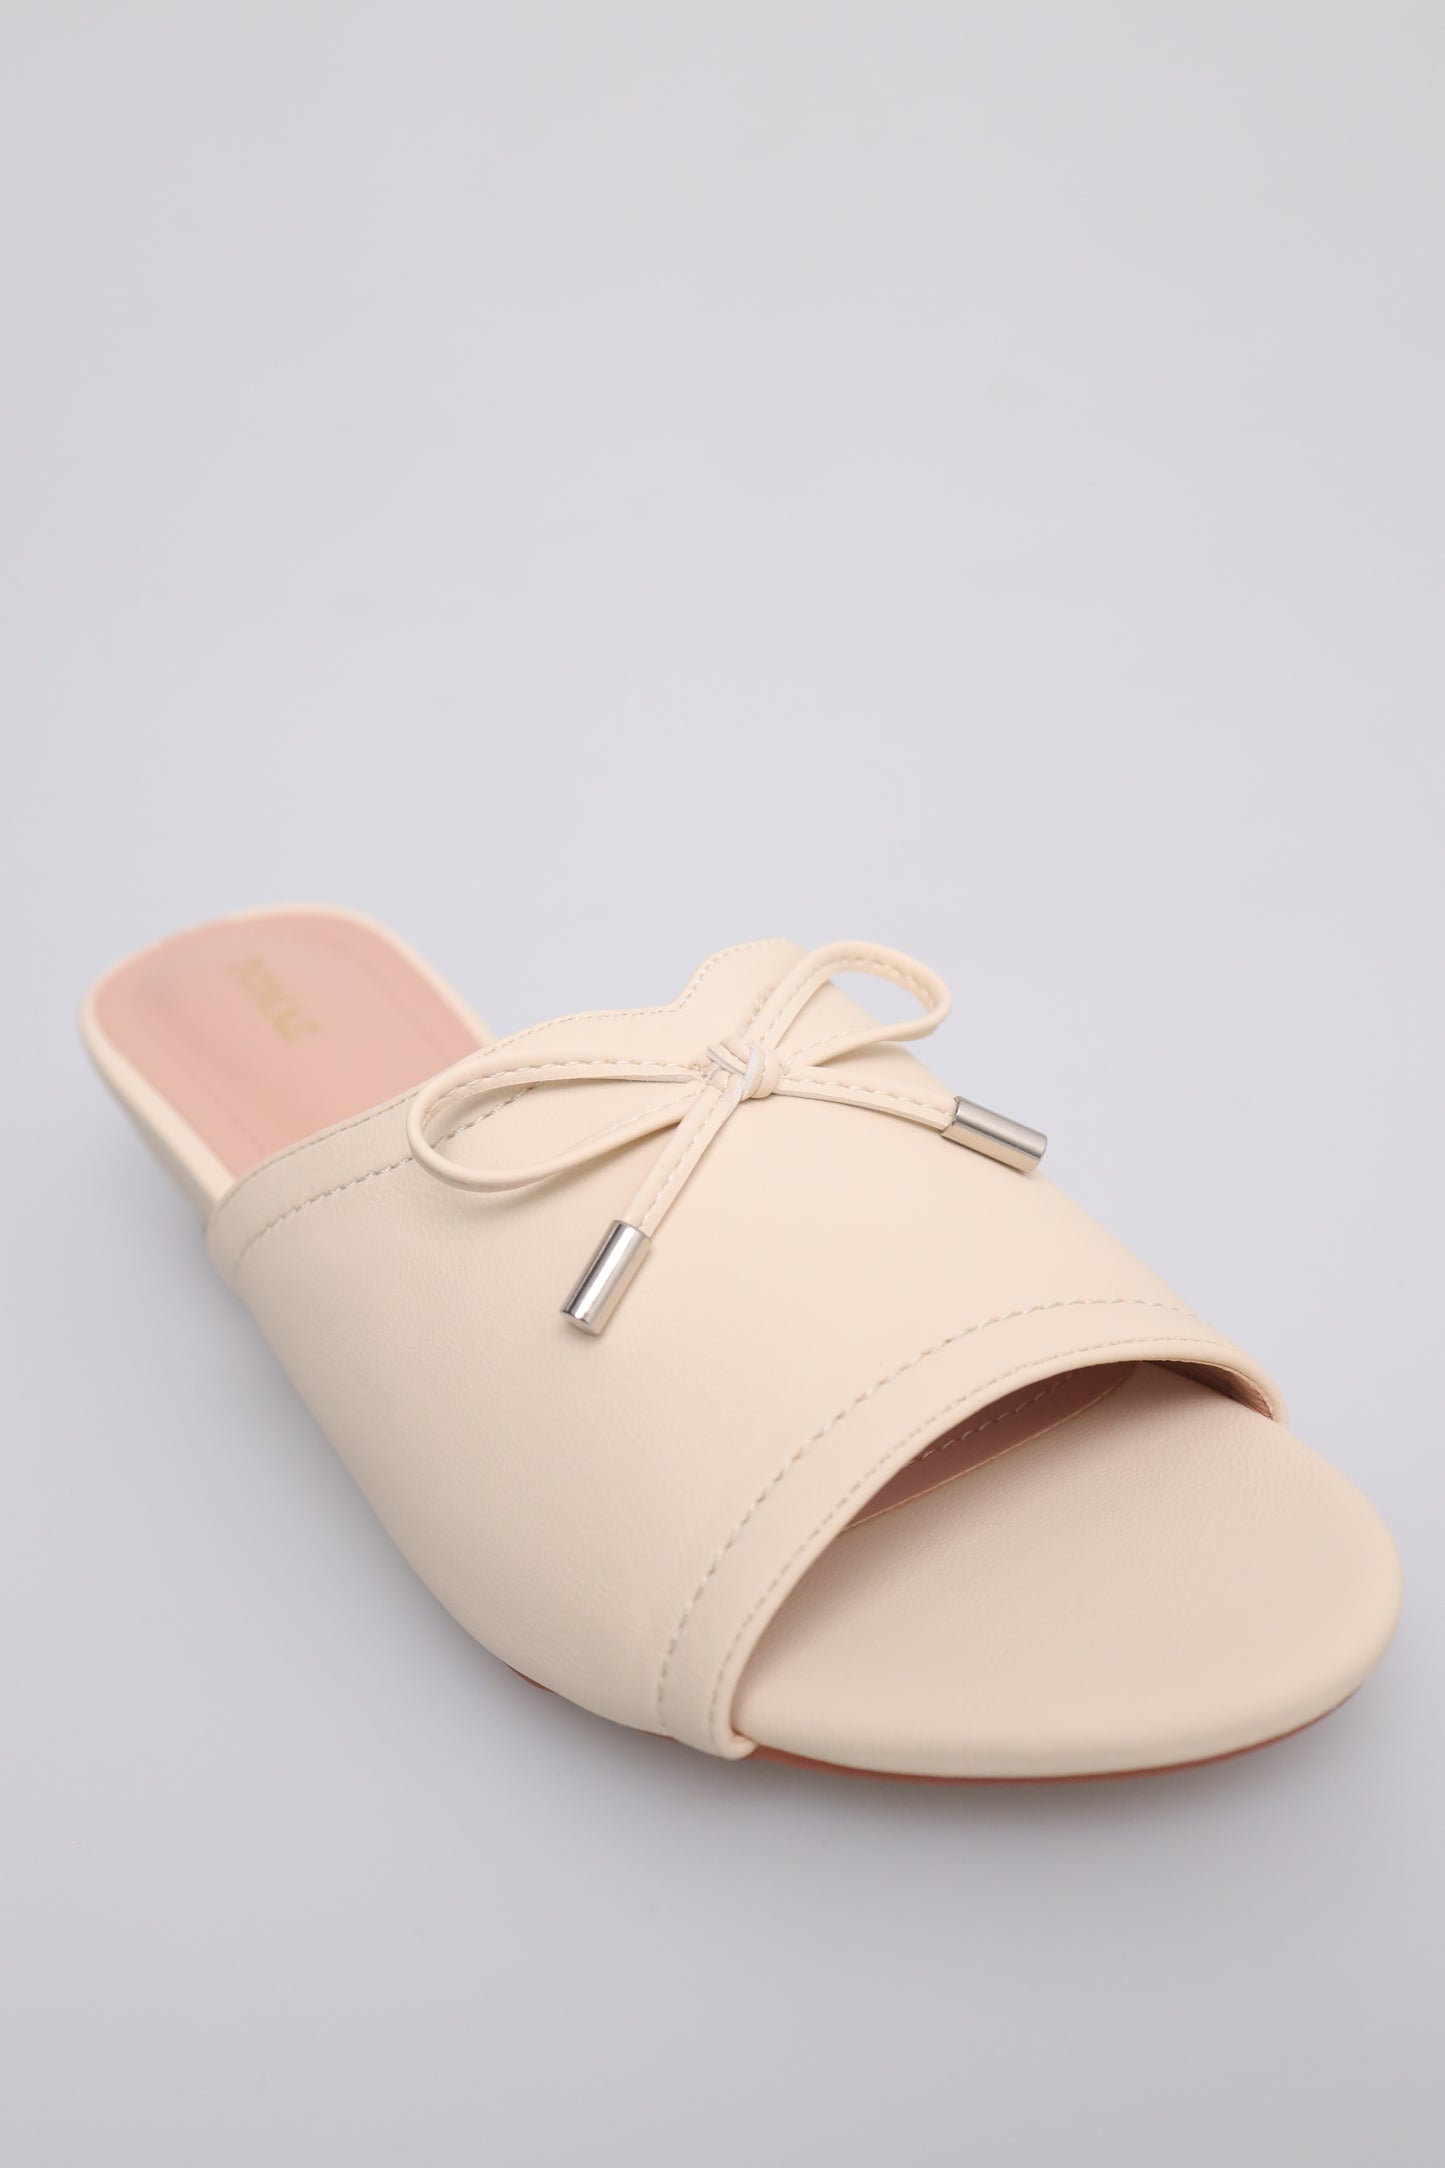 Tomaz FL064 Ladies Slide in Flats (Cream)